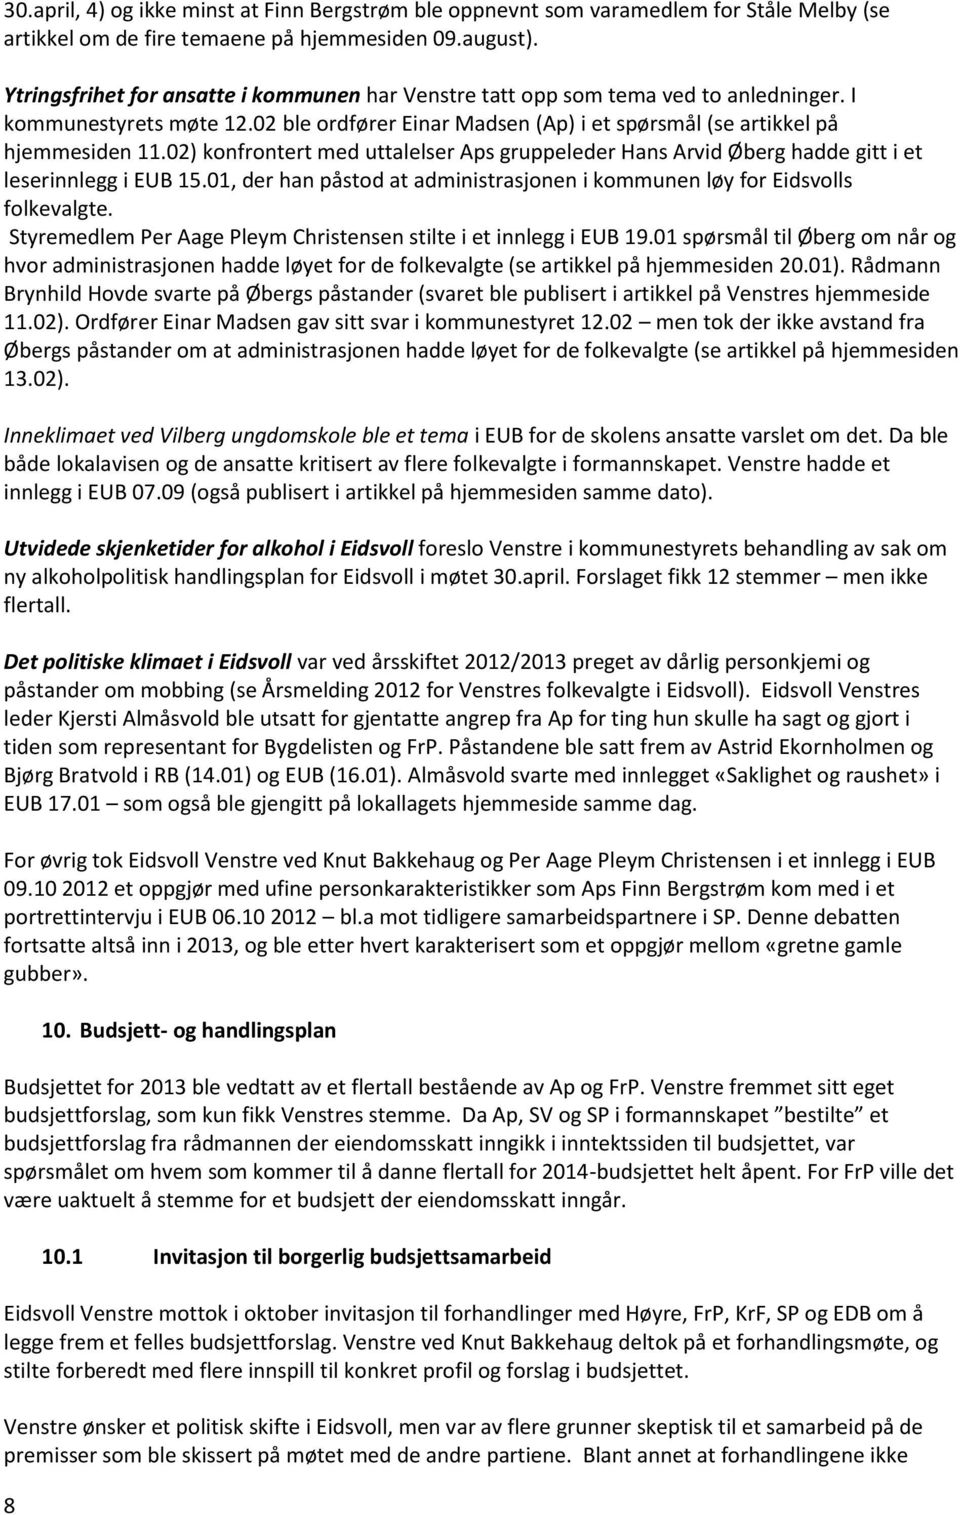 02) konfrontert med uttalelser Aps gruppeleder Hans Arvid Øberg hadde gitt i et leserinnlegg i EUB 15.01, der han påstod at administrasjonen i kommunen løy for Eidsvolls folkevalgte.